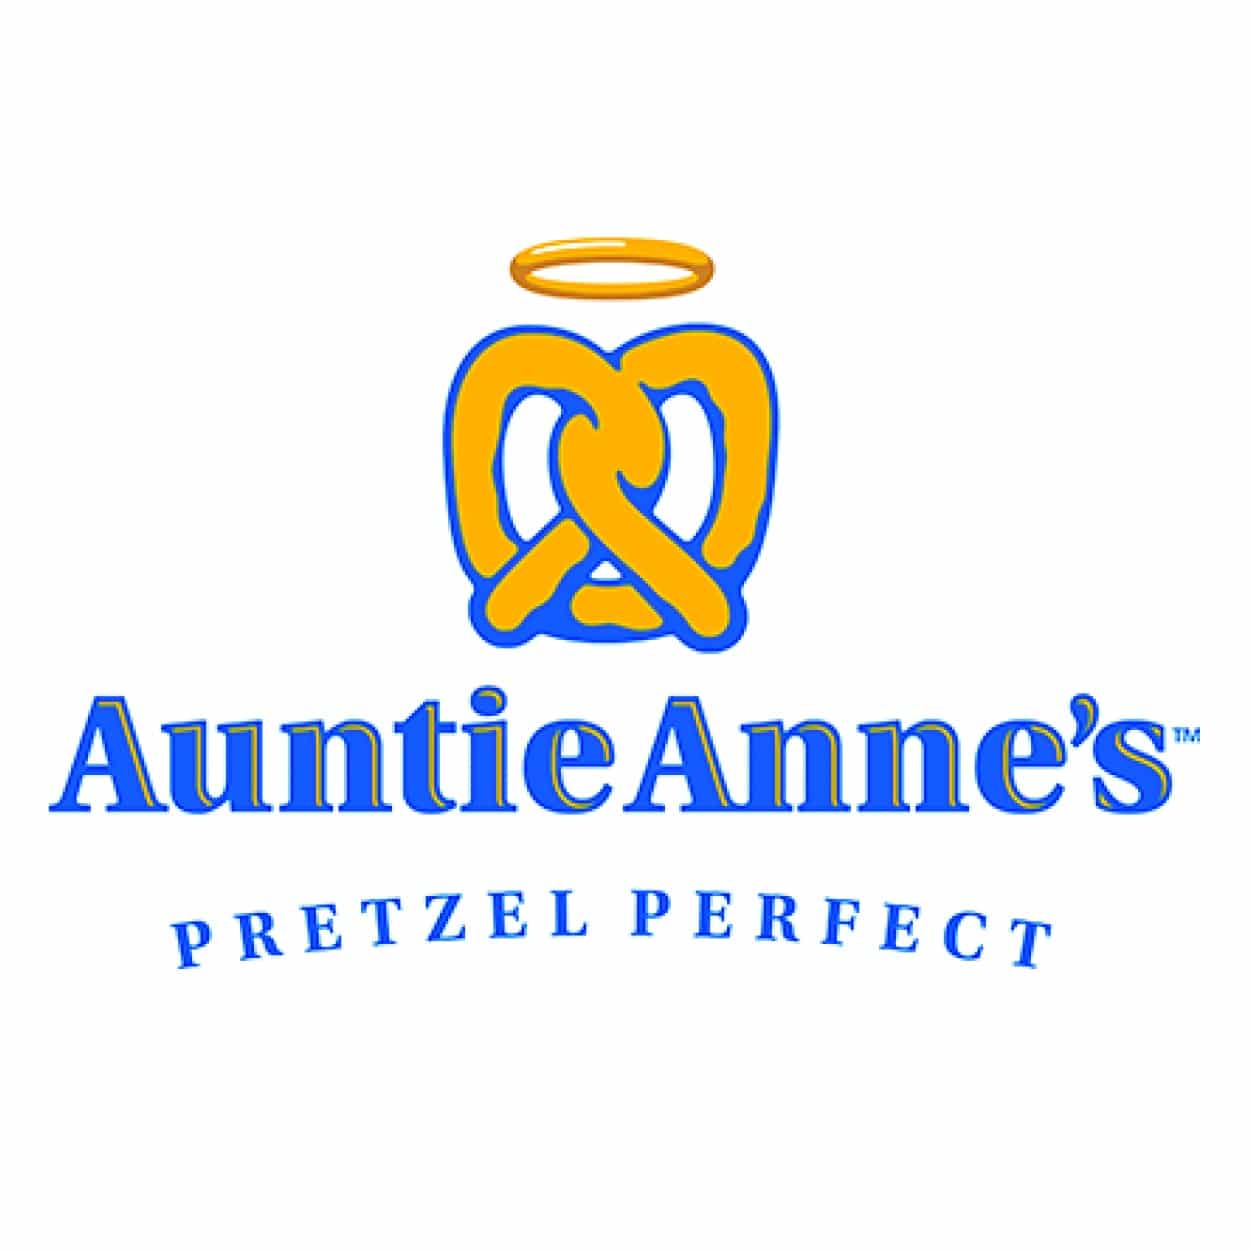 logo auntie